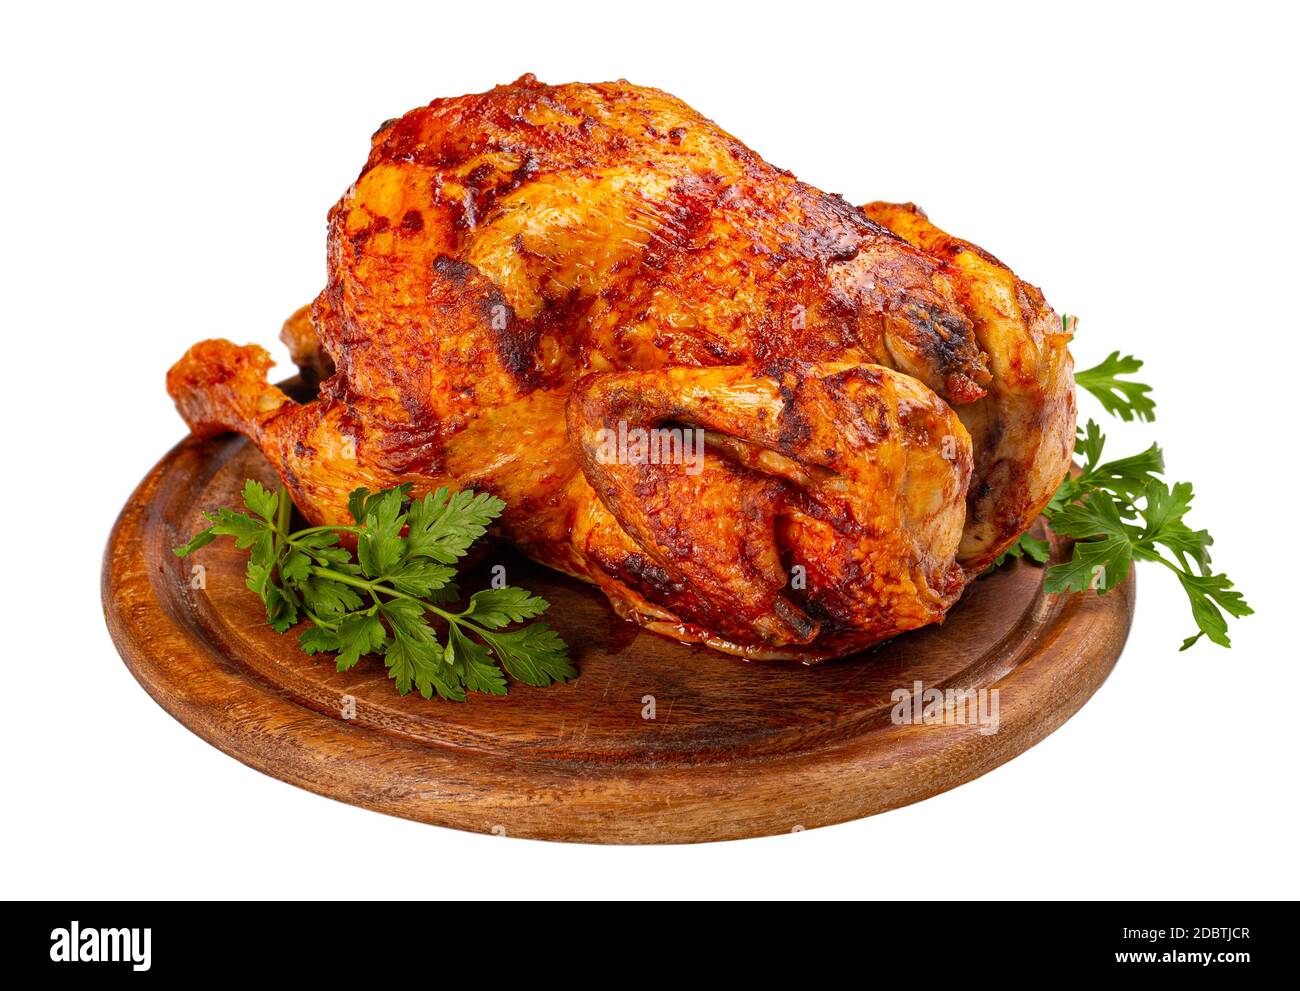 https://c8.alamy.com/comp/2DBTJCR/homemade-chicken-rotisserie-on-wooden-cutting-board-2DBTJCR.jpg